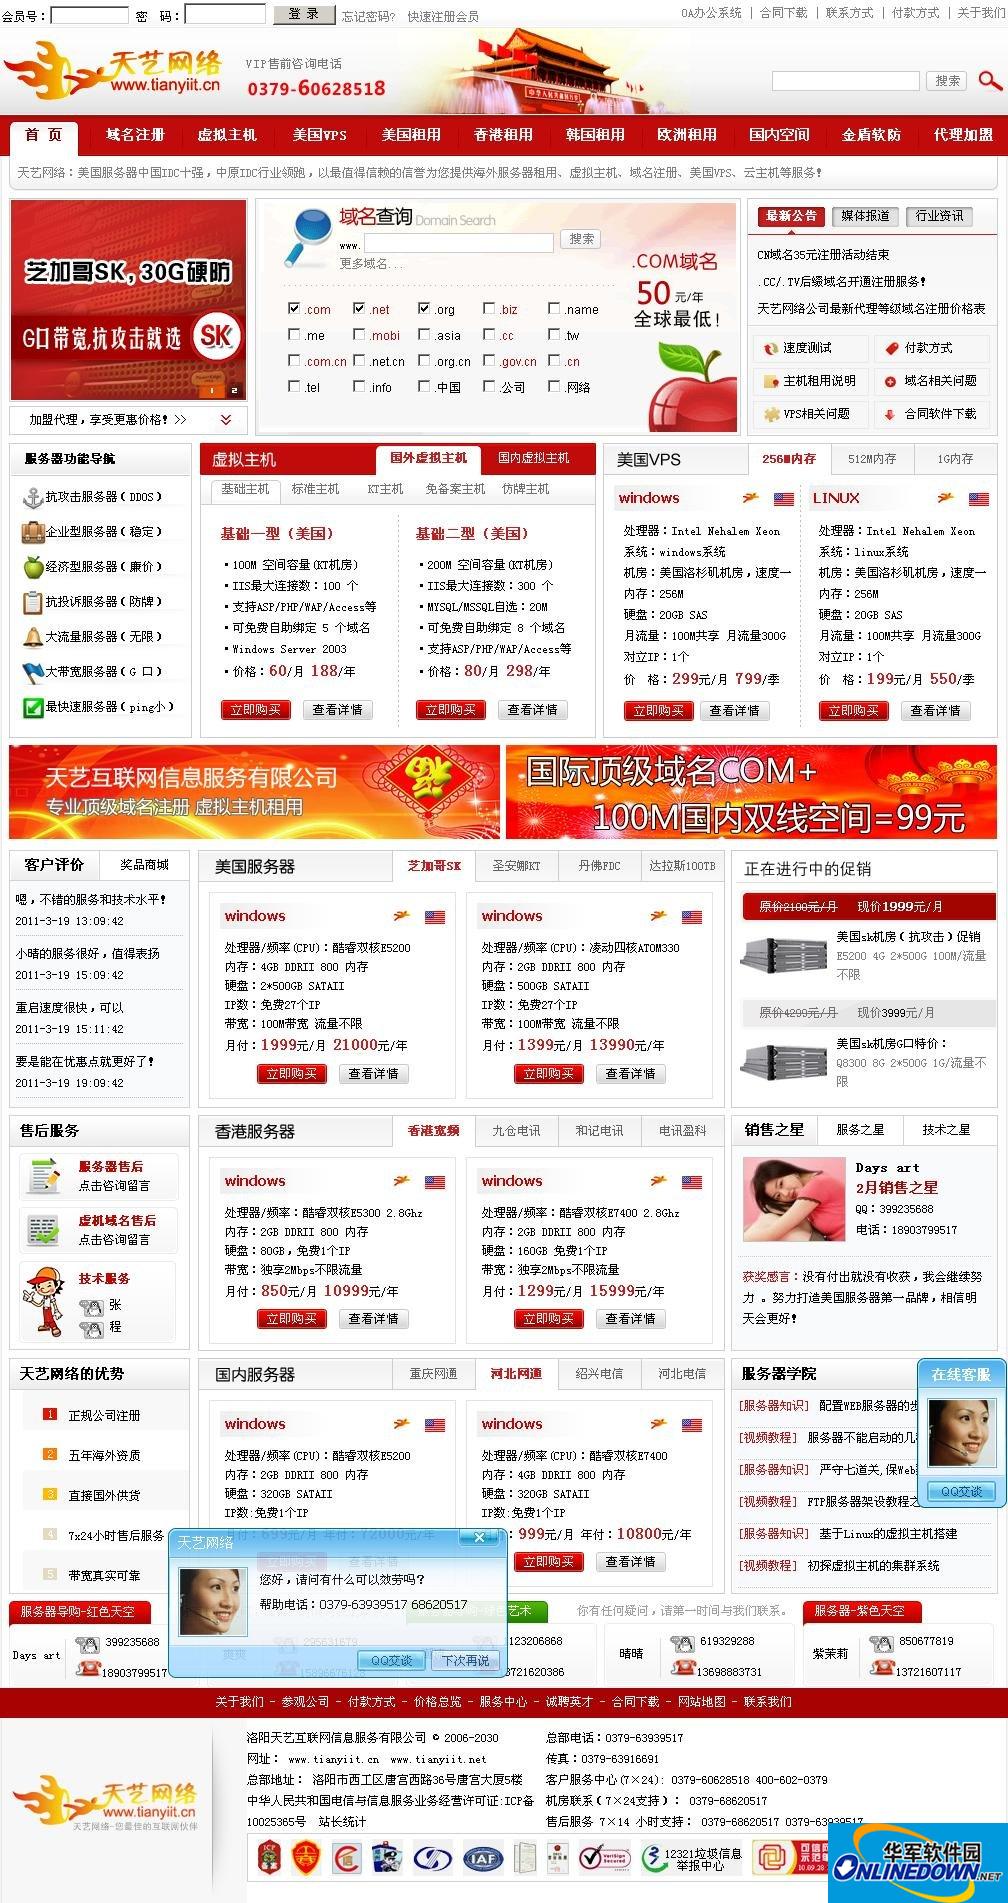 洛阳天艺网络公司ISP平台系统